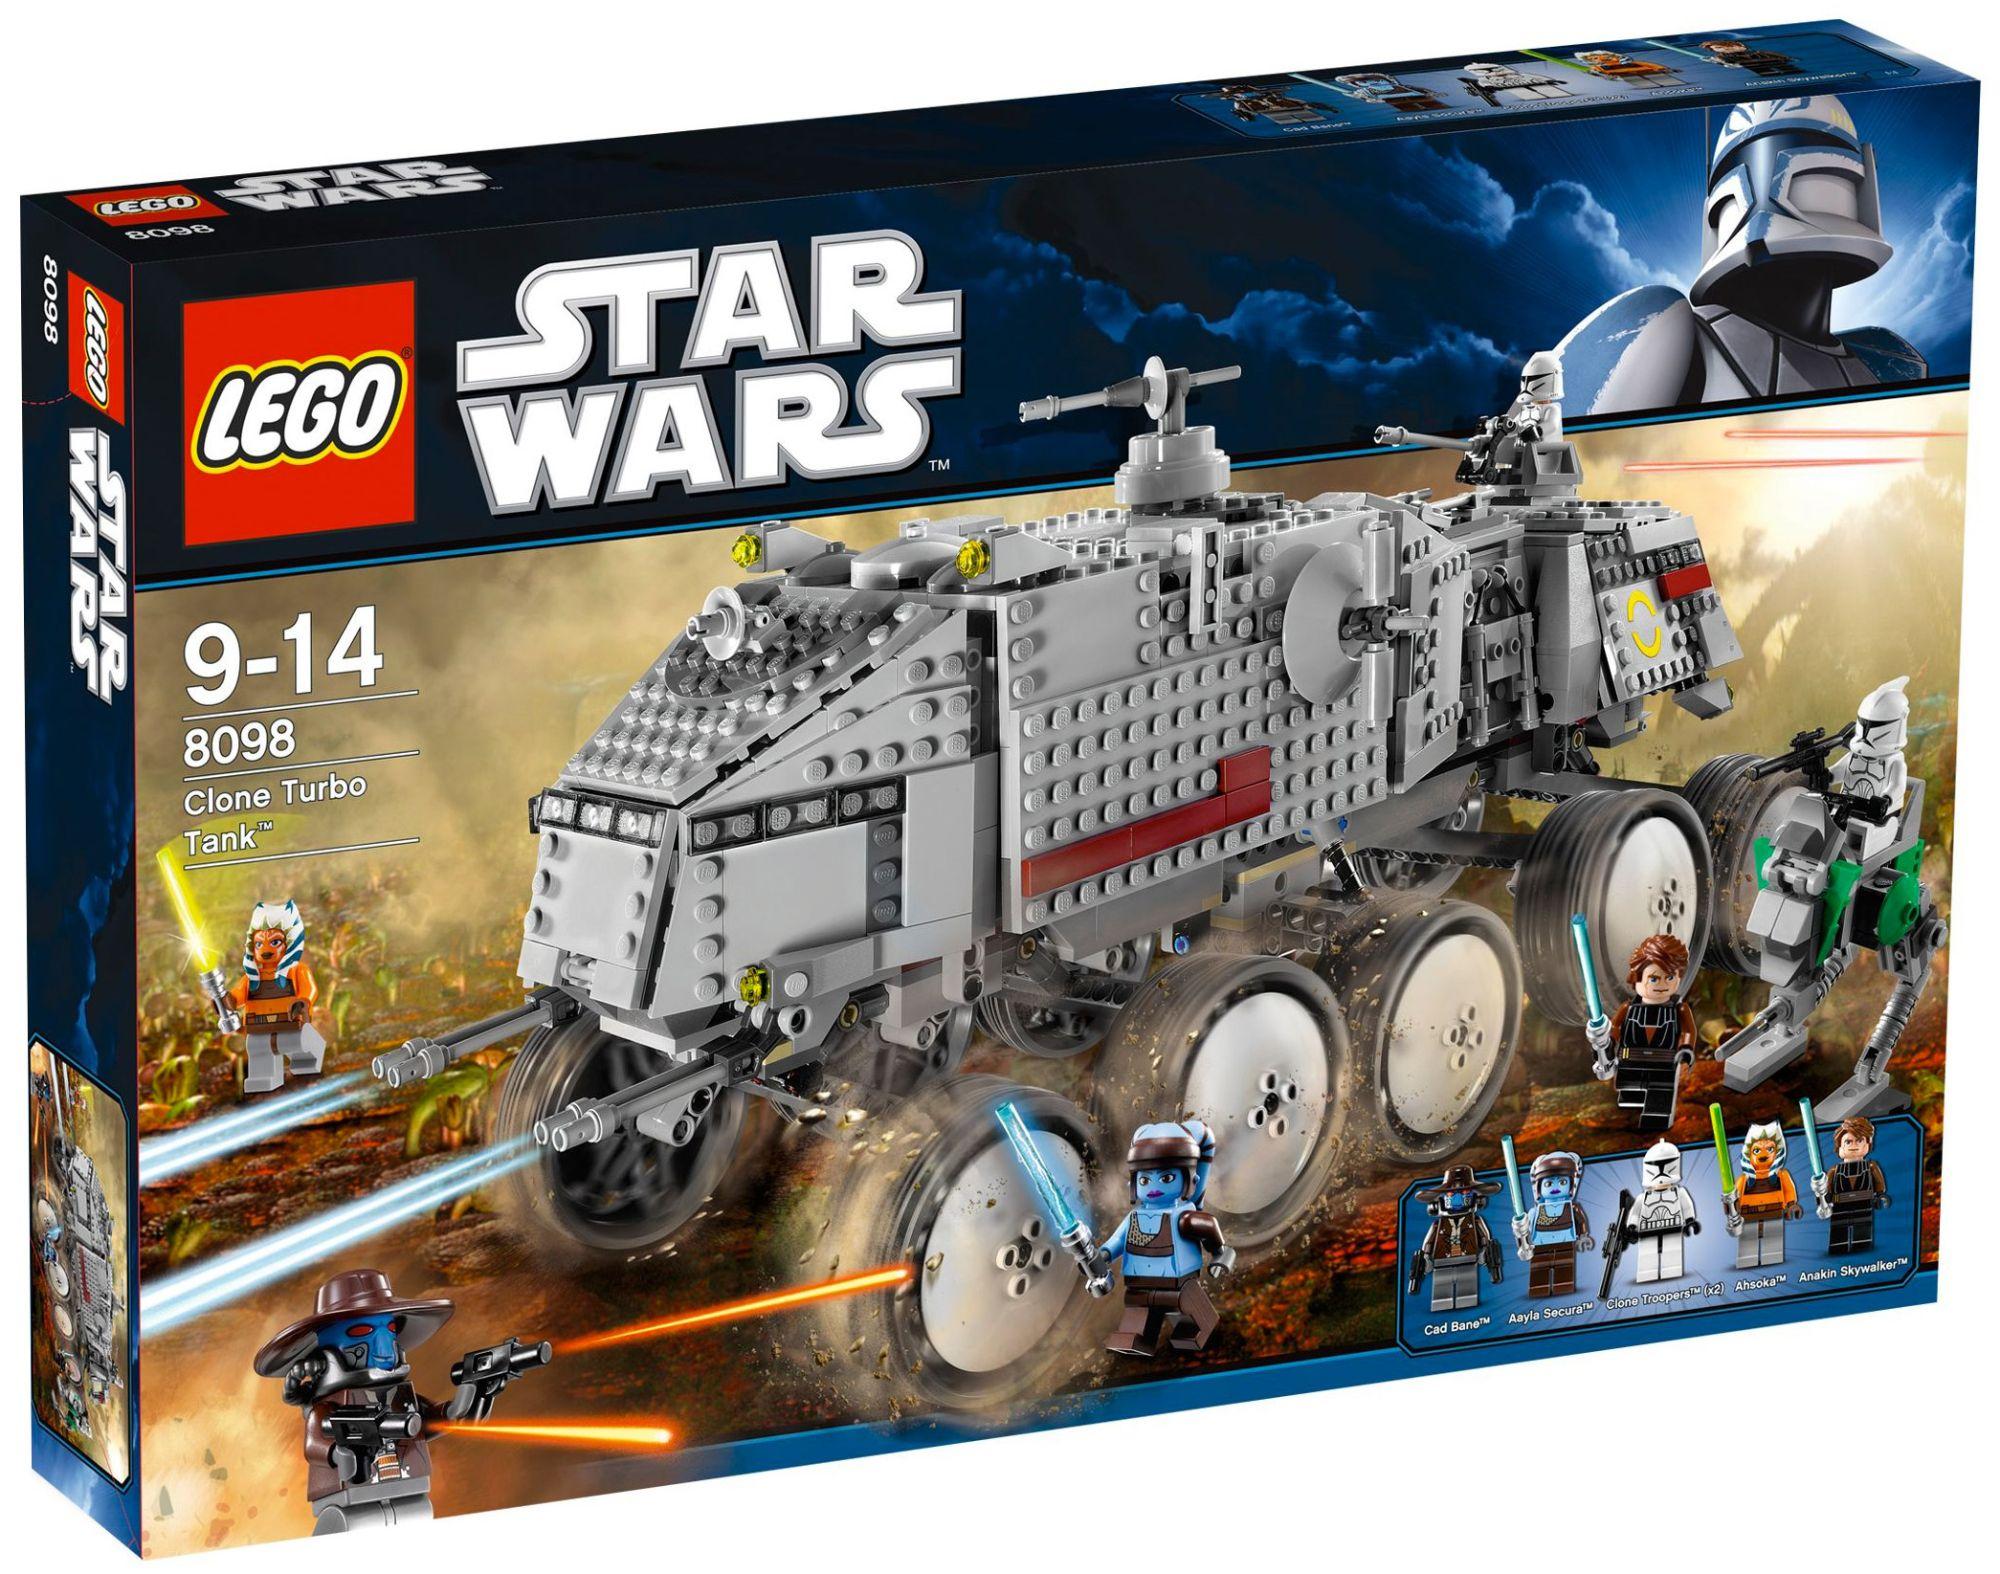 LEGO Star Wars - Clone Turbo Tank - 8098